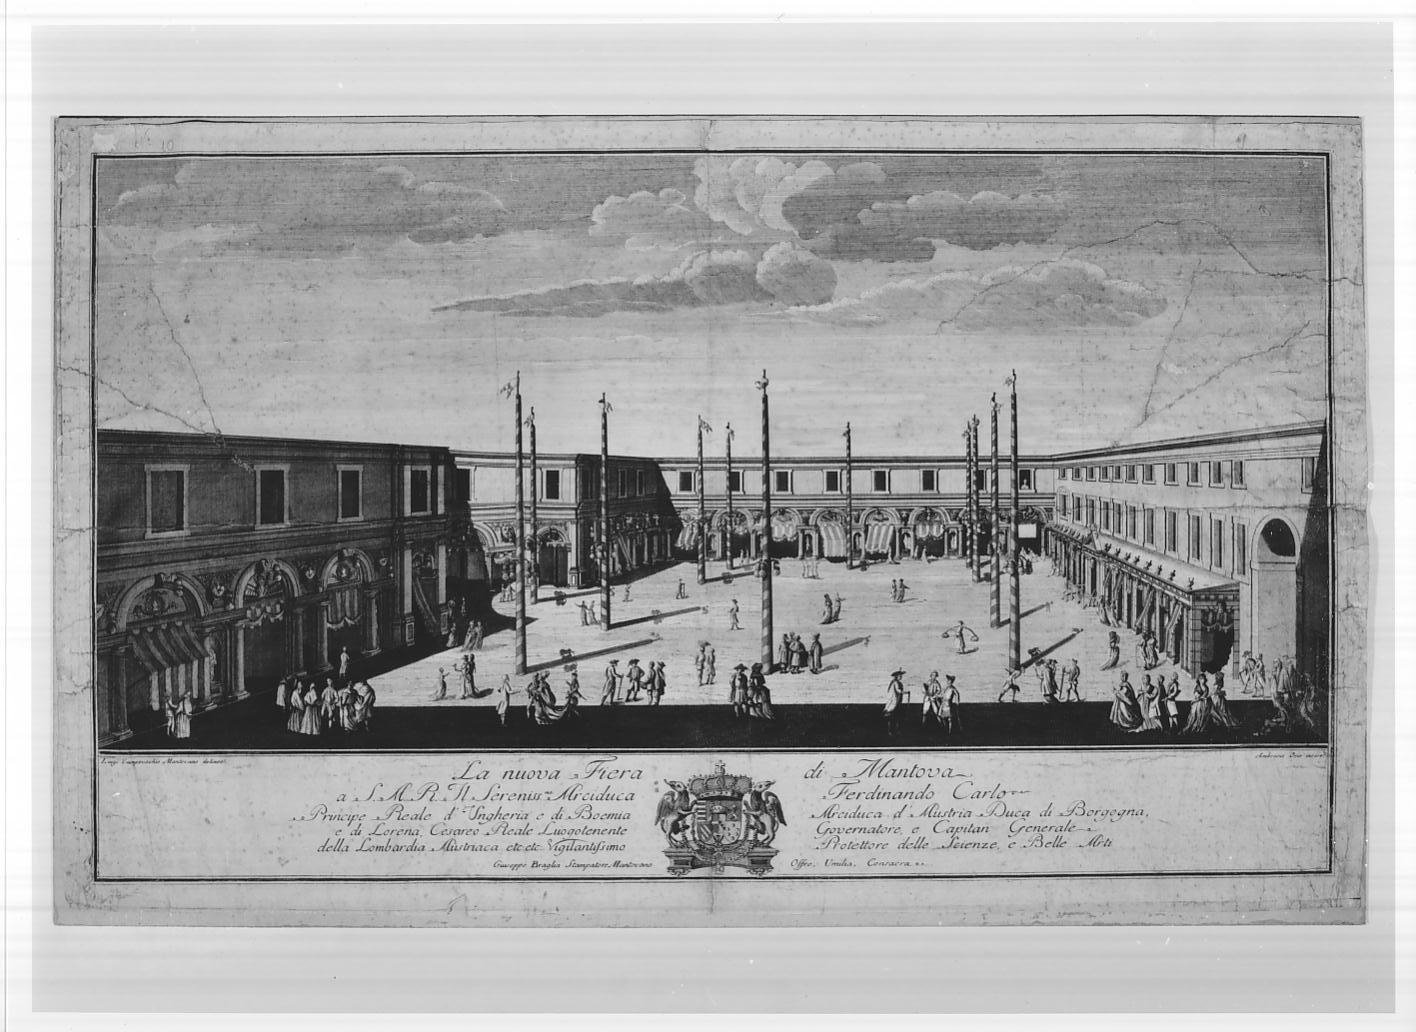 La nuova fiera di Mantova (stampa smarginata) di Orio Ambrogio, Campovecchio Luigi (sec. XVIII)